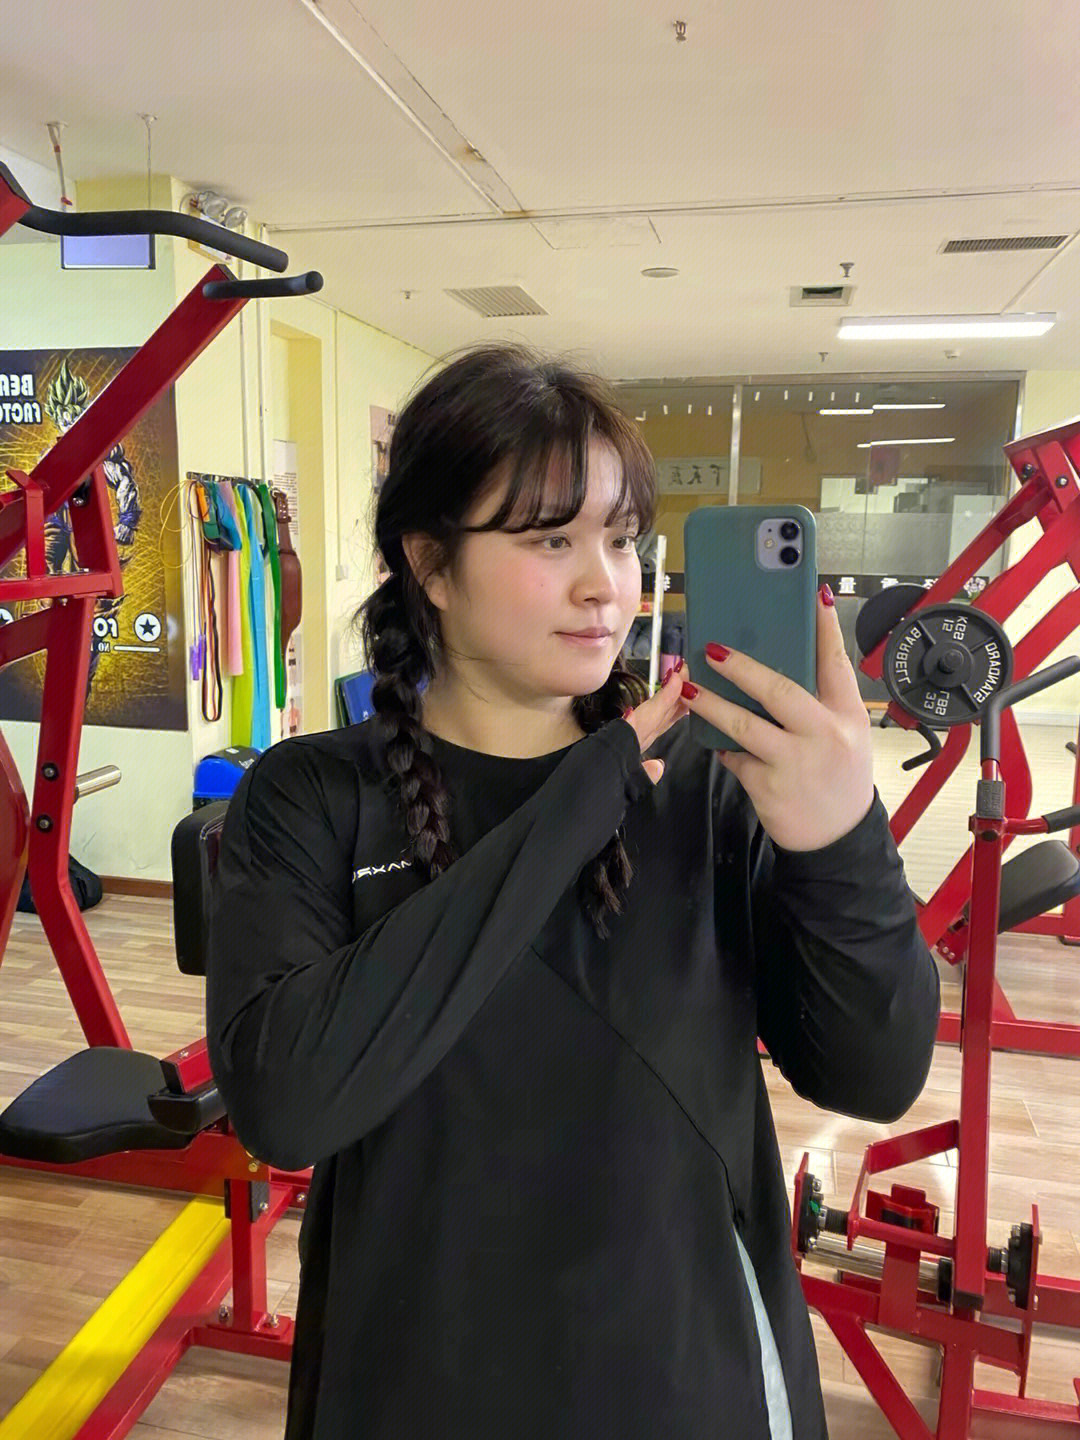 200斤胖女孩健身穿搭第一次去健身房